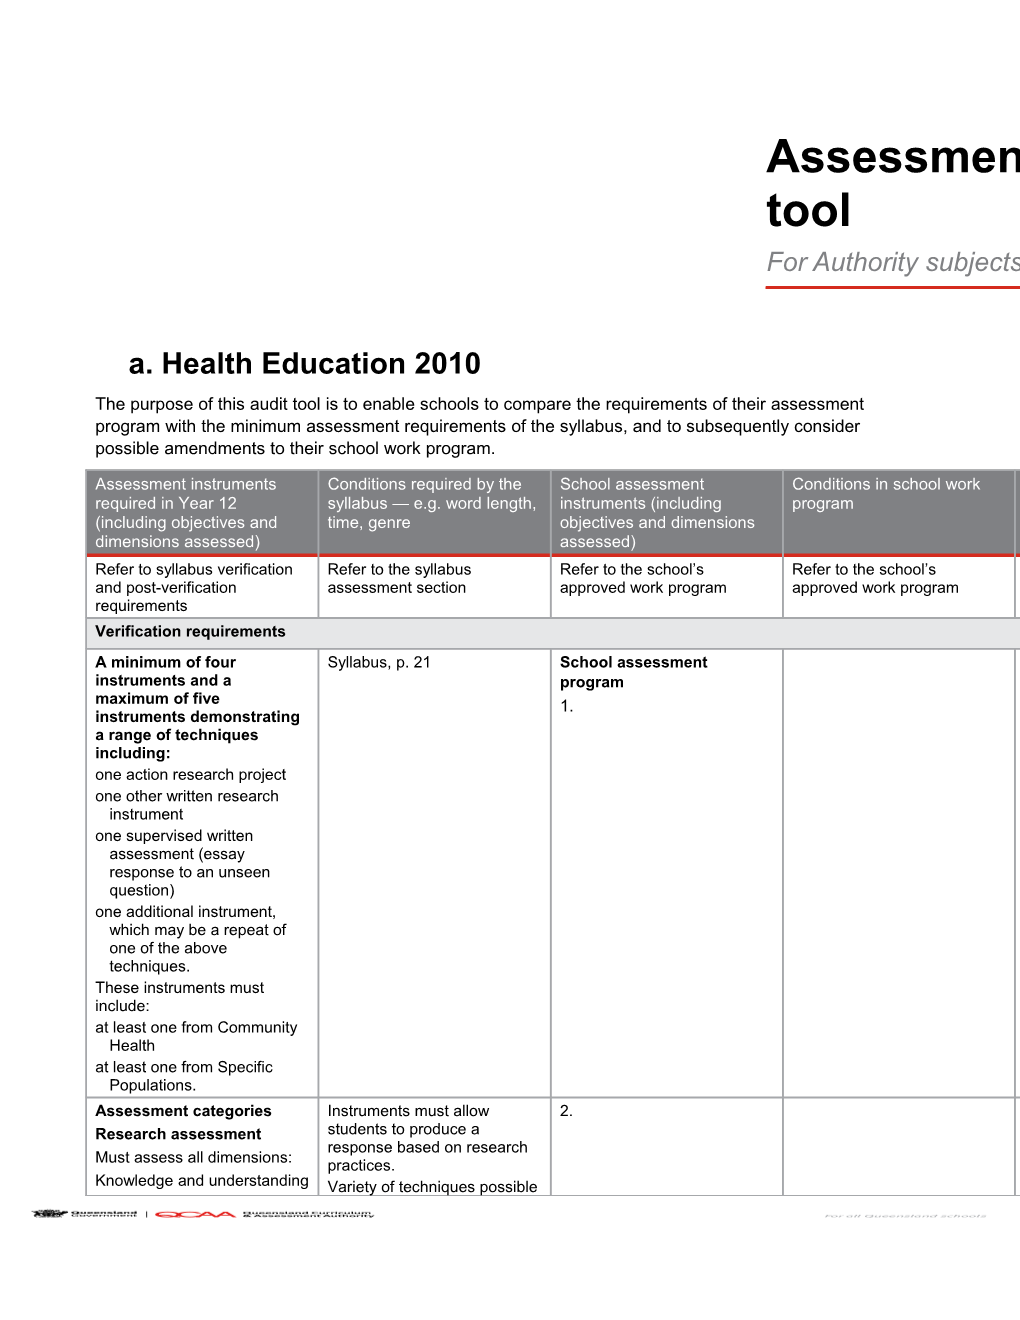 Health Education 2010 Assessment Program Audit Tool